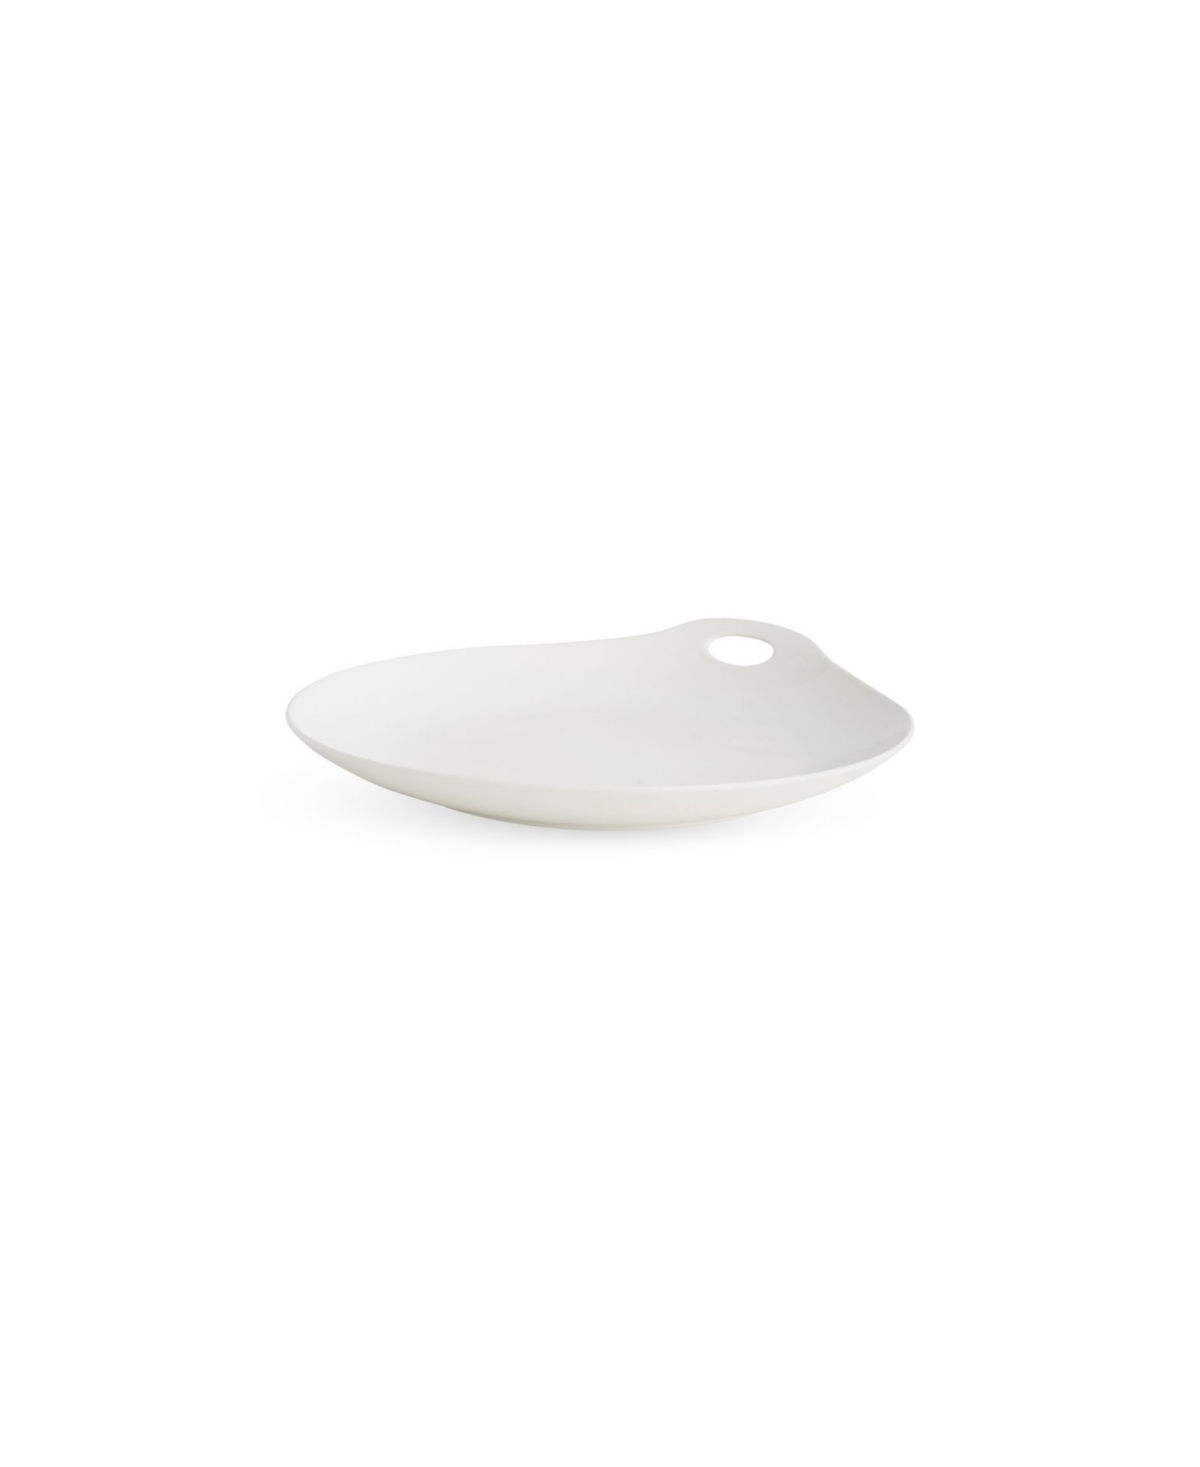 Portables Dinner Plate - White